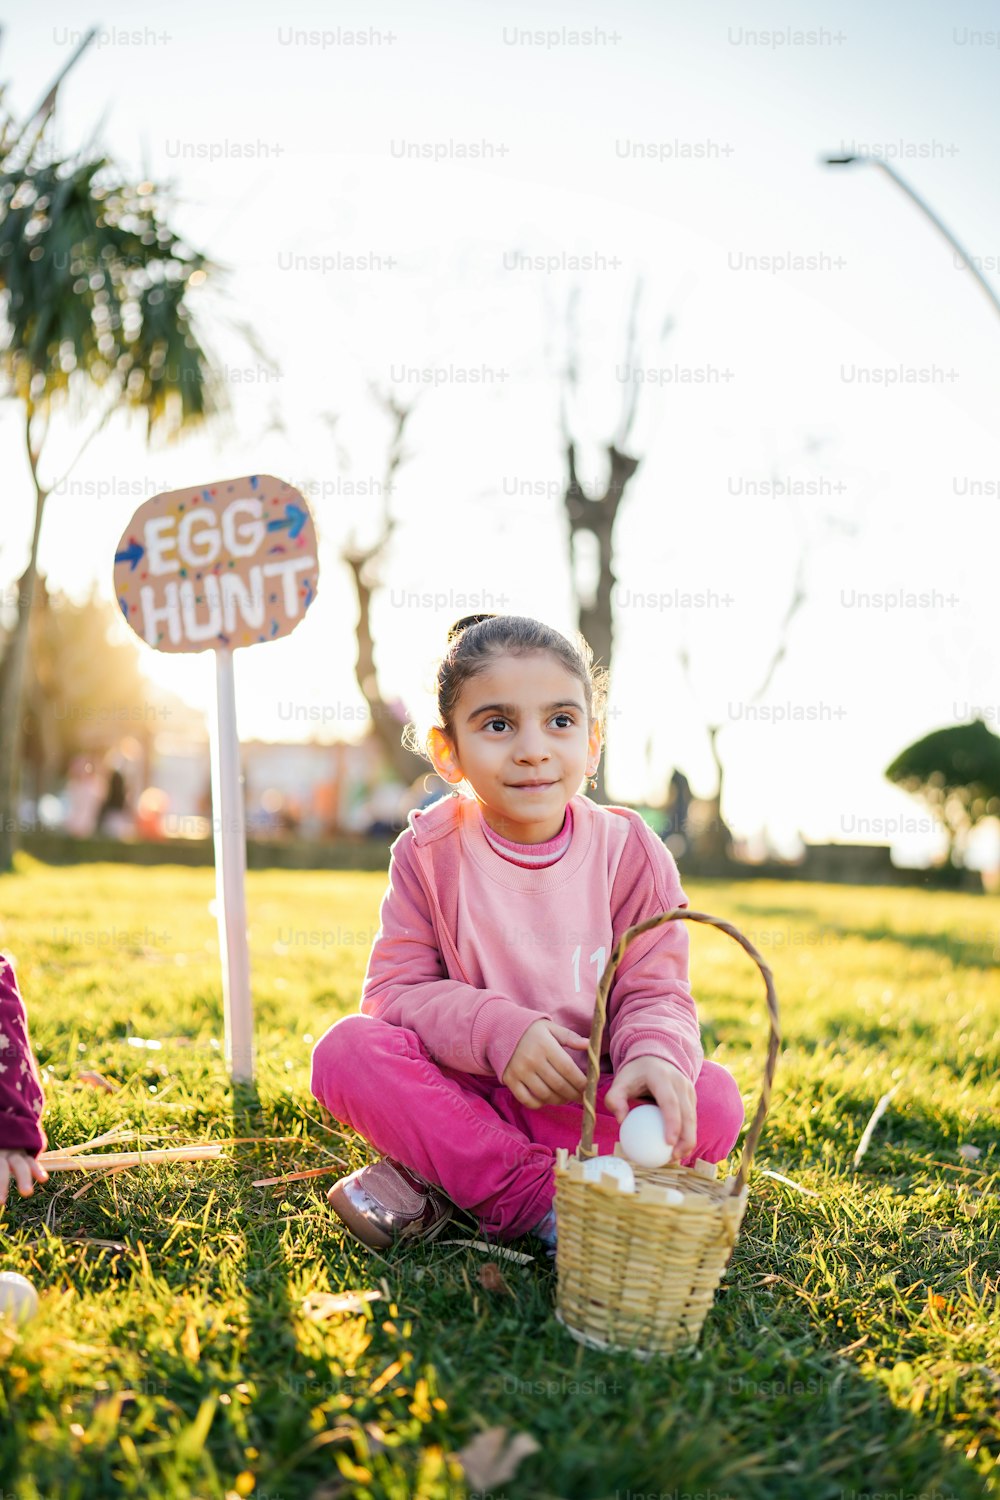 Ein kleines Mädchen sitzt im Gras mit einem Korb voller Eier